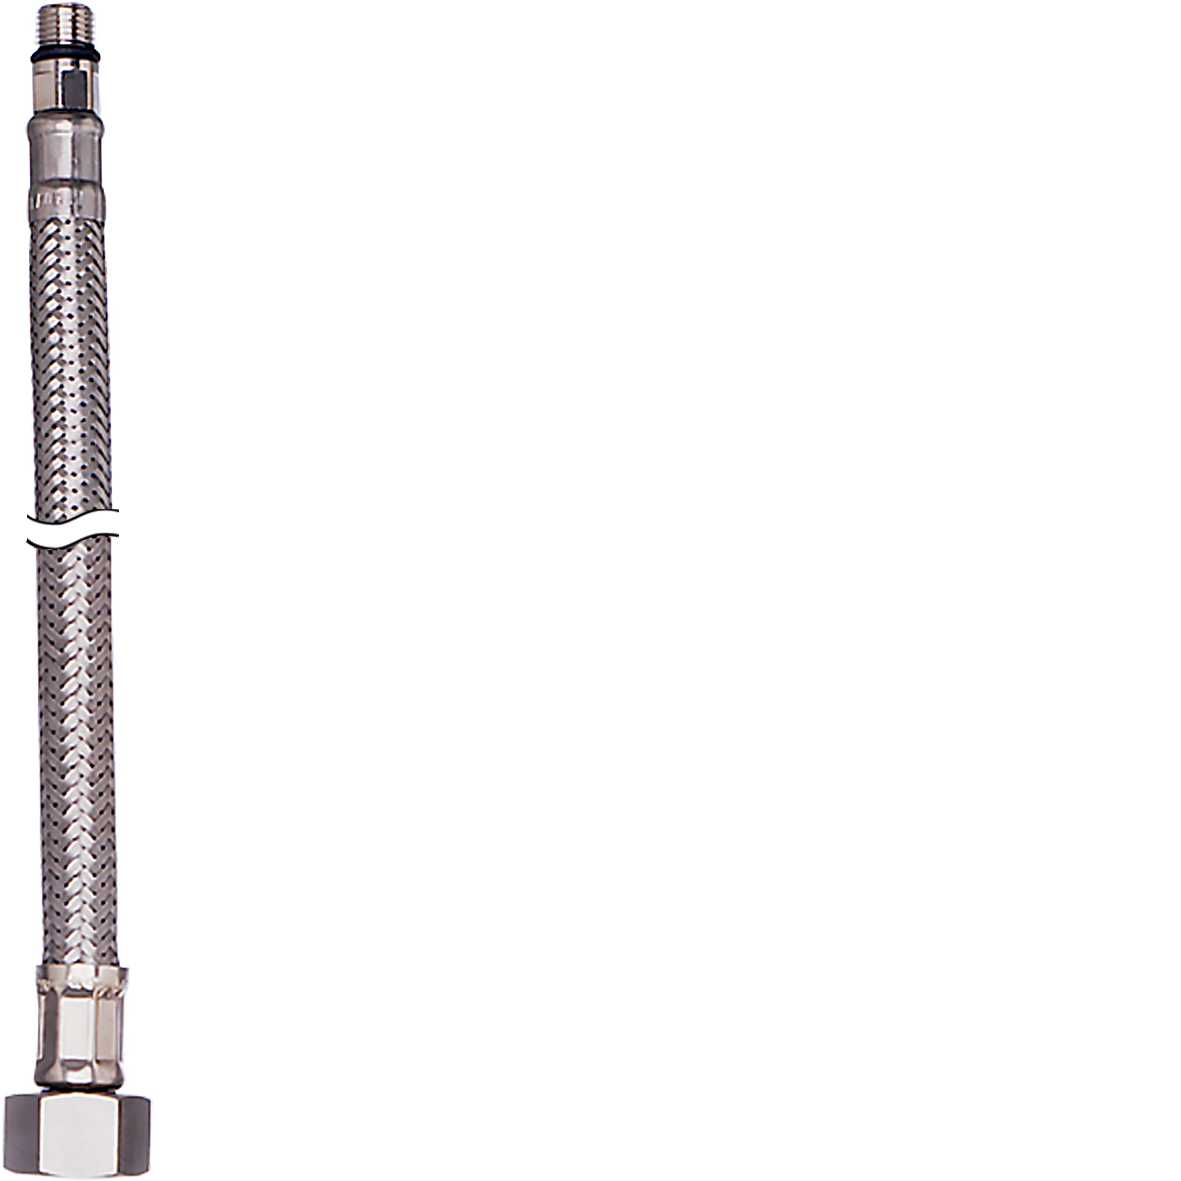 Verbindungsschlauch Ø 12 x 8 mm L 500 mm (Nippel L 17 mm) M10 x 3/8, Flexschläuche, Befestigung und Anschluss, Ersatzteile